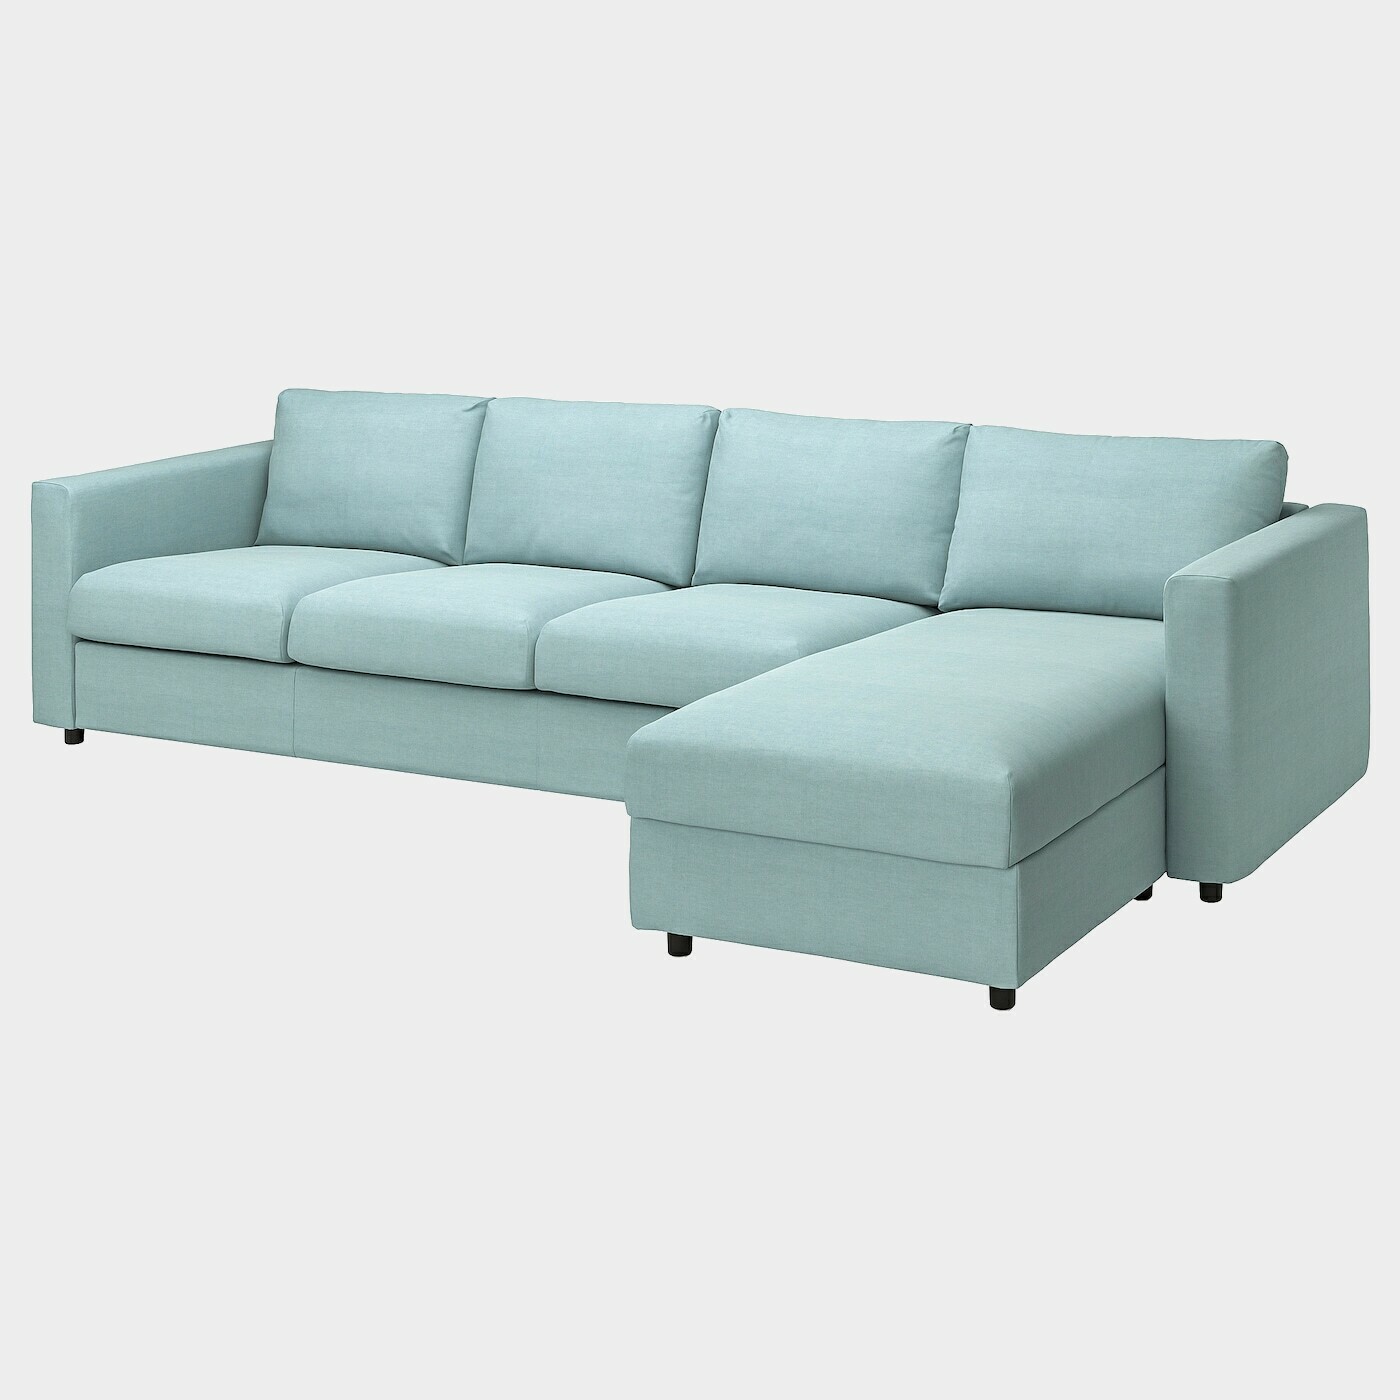 VIMLE 4er-Sofa mit Récamiere  -  - Möbel Ideen für dein Zuhause von Home Trends. Möbel Trends von Social Media Influencer für dein Skandi Zuhause.